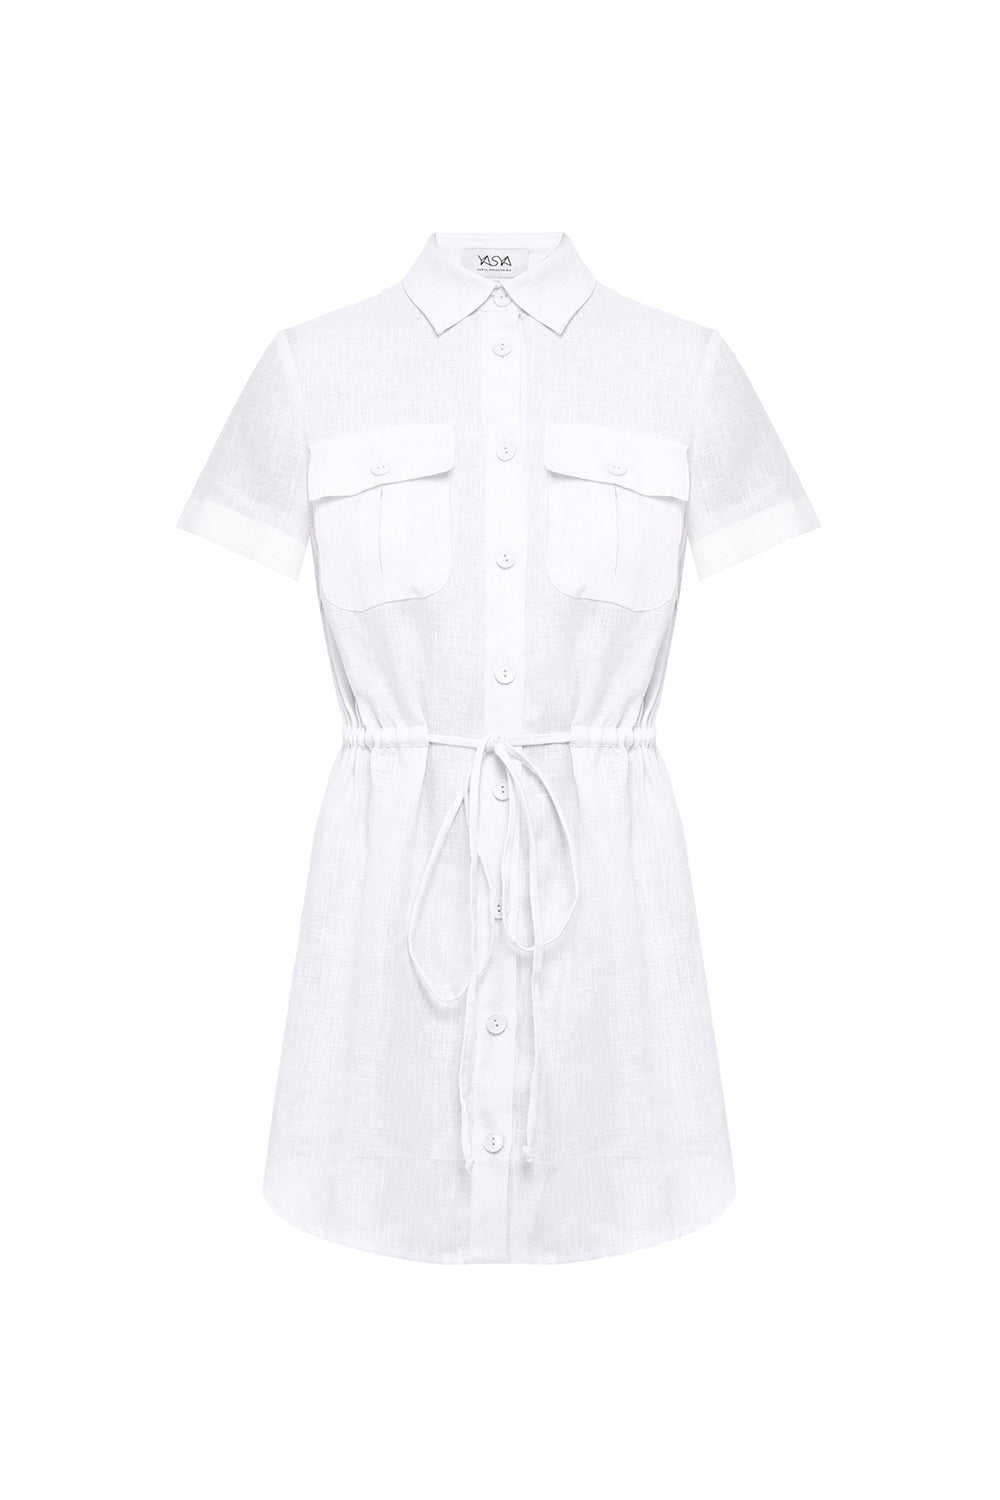 LP White Short Sleeve Linen Shirt Dress